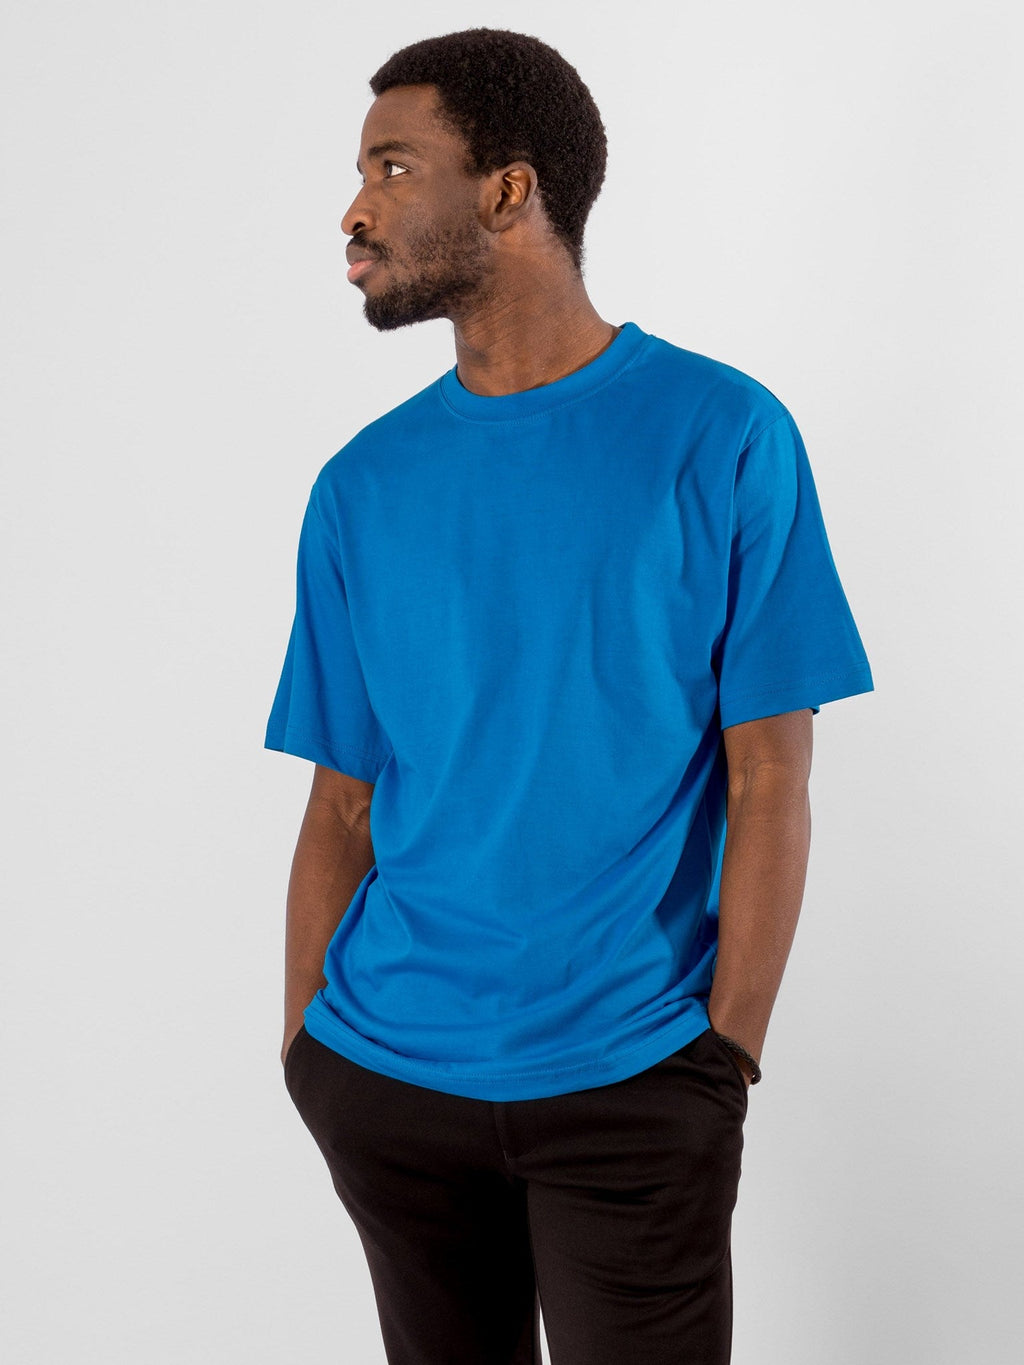 T -shirt di grandi dimensioni - blu turchese